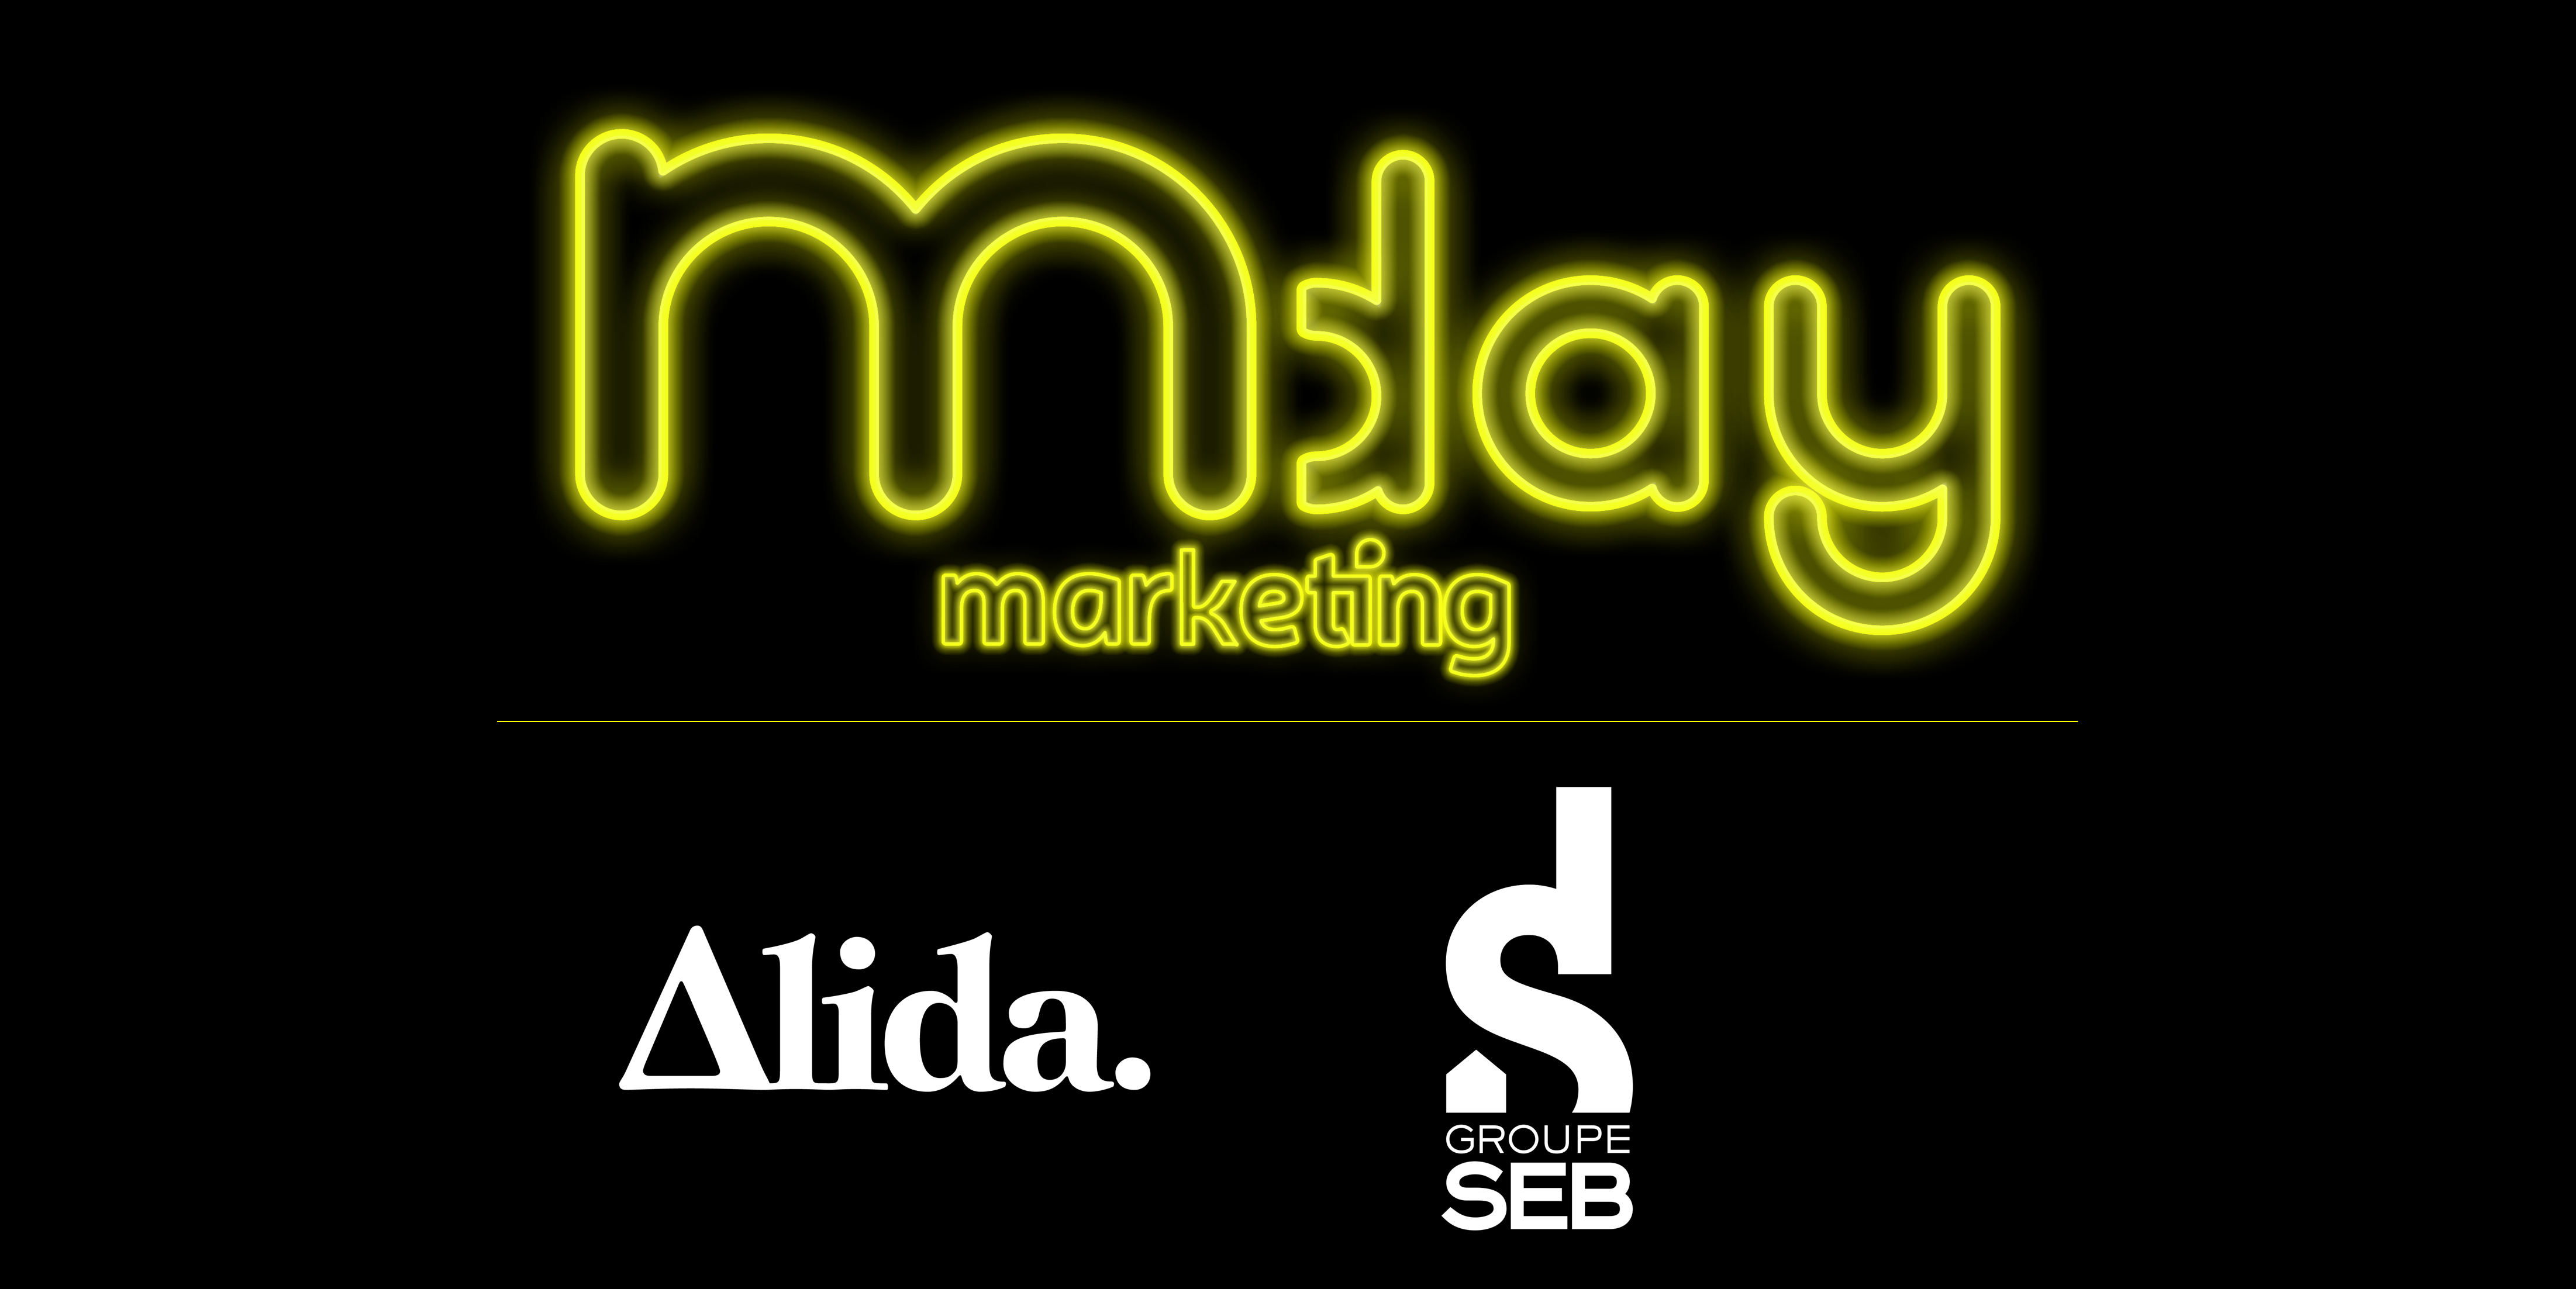 Marketing Day 2021: Groupe SEB 